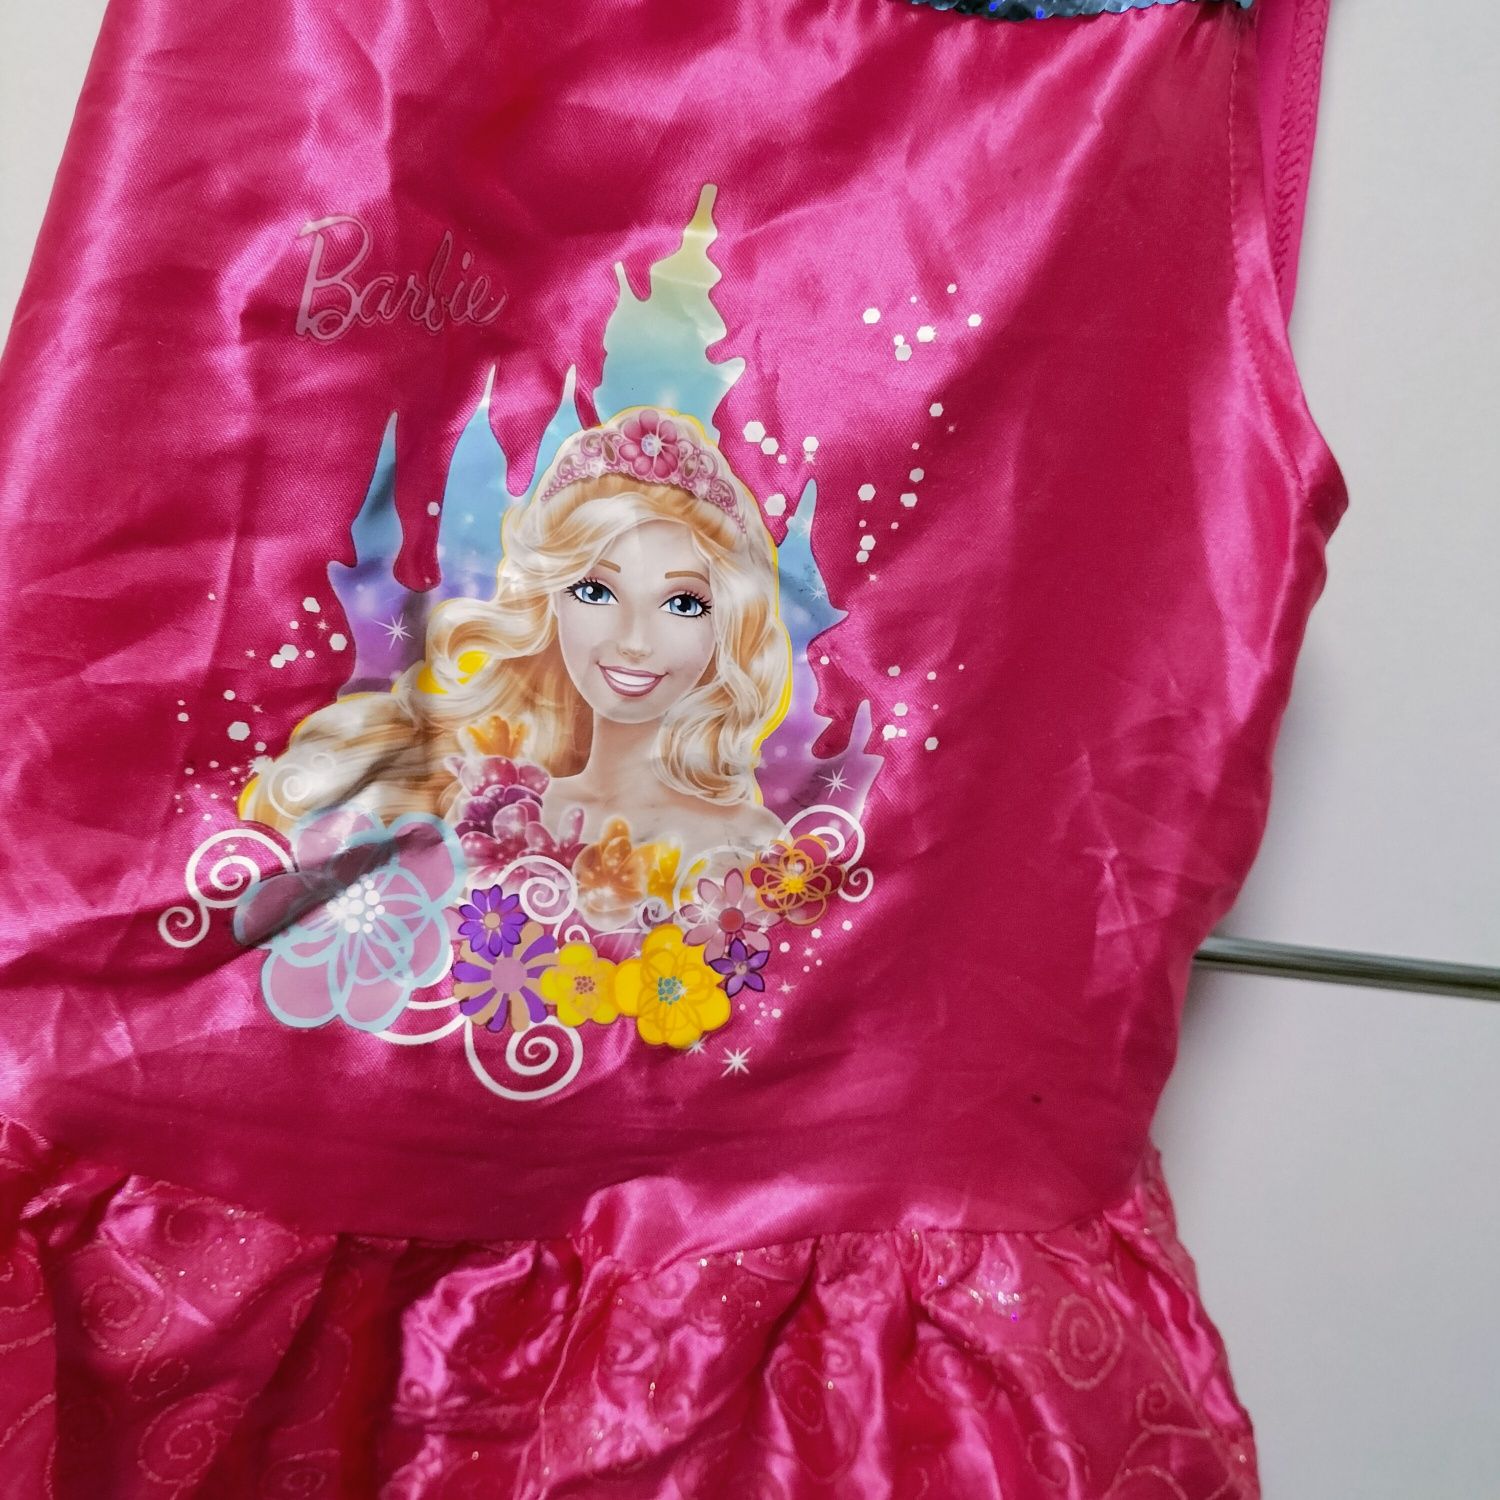 Barbie kostium dziewczęcy 128 cm